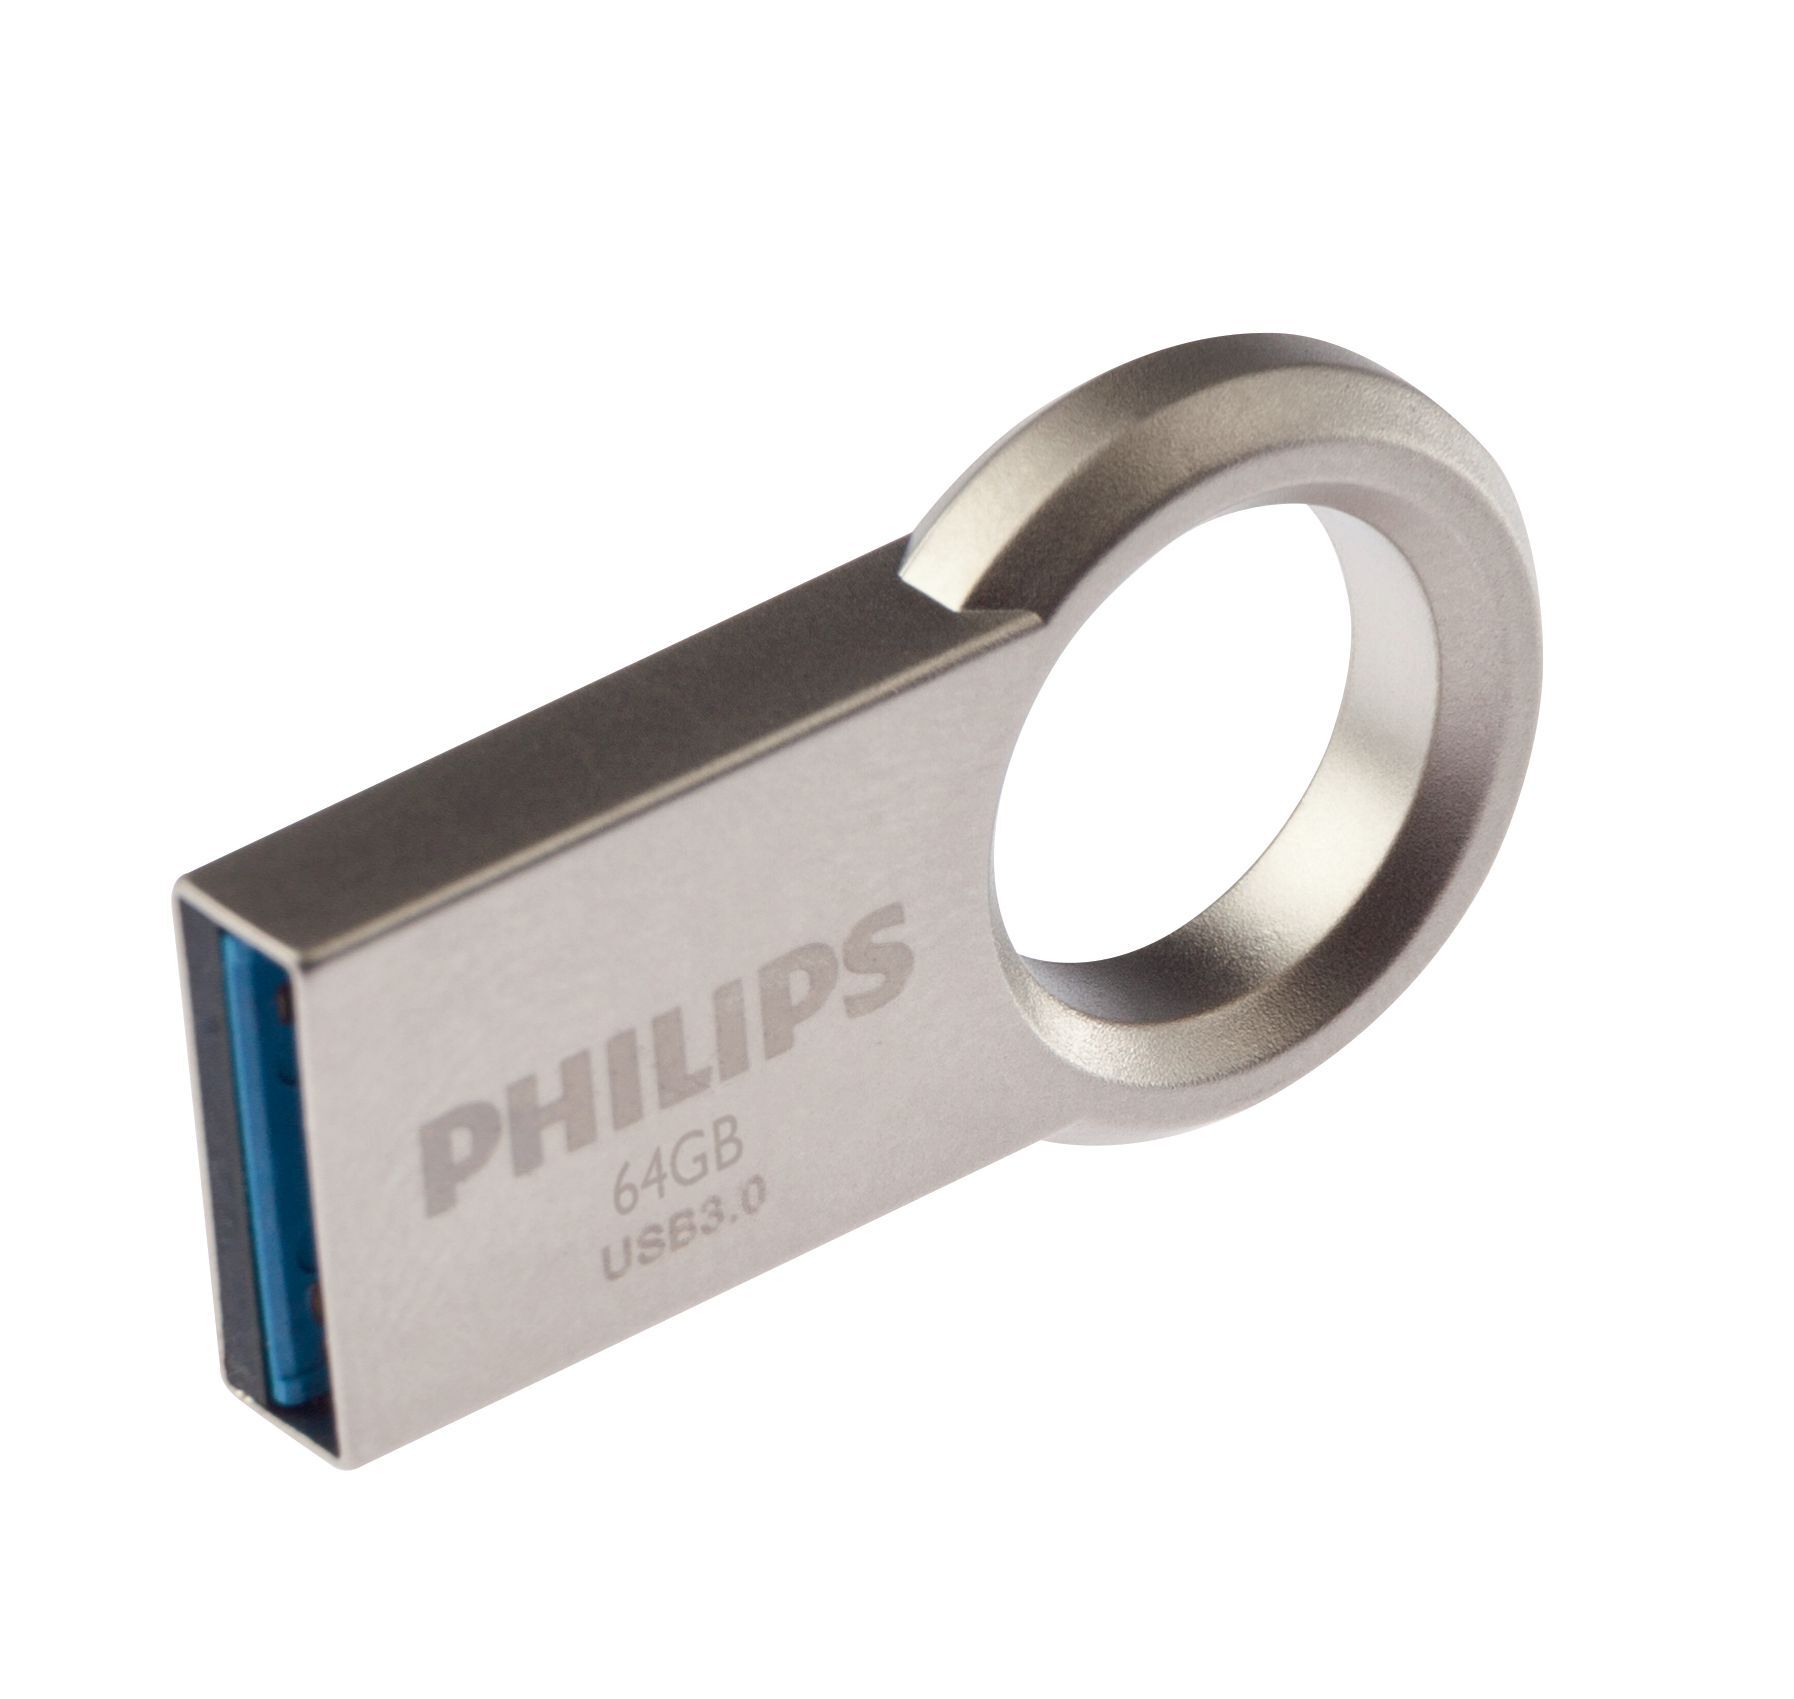 Philips USB Flash Drive FM64FD145B/10 64 GB